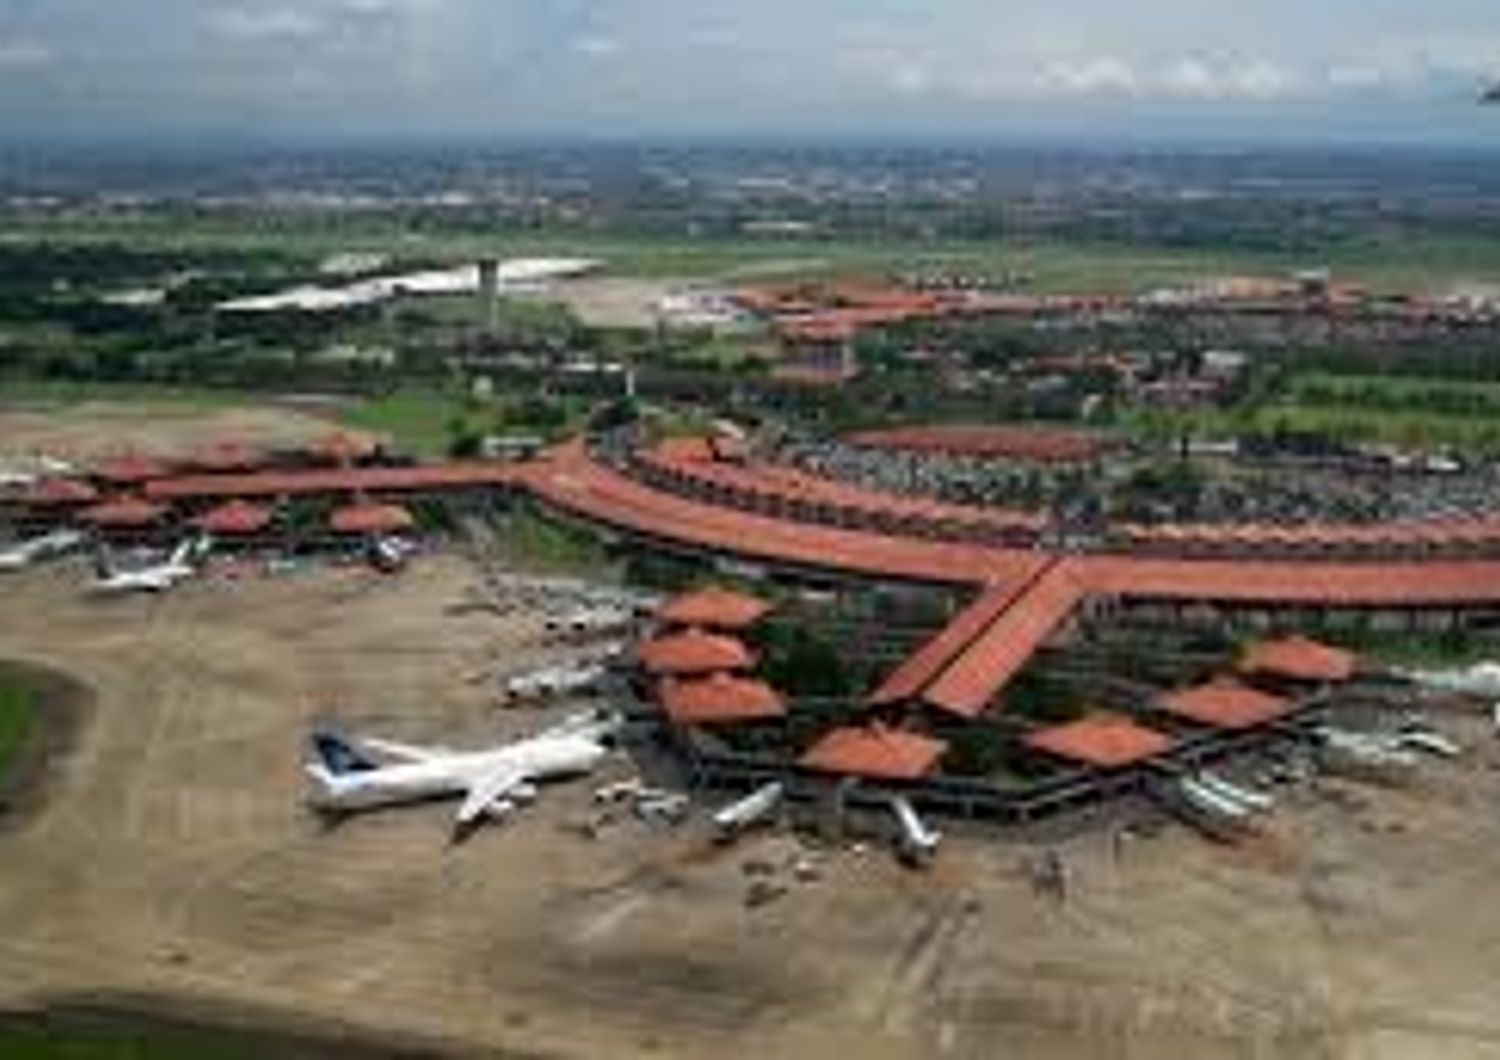 &nbsp;Indonesia aeroporto internazionale Soekarno Hatta - wikipedia